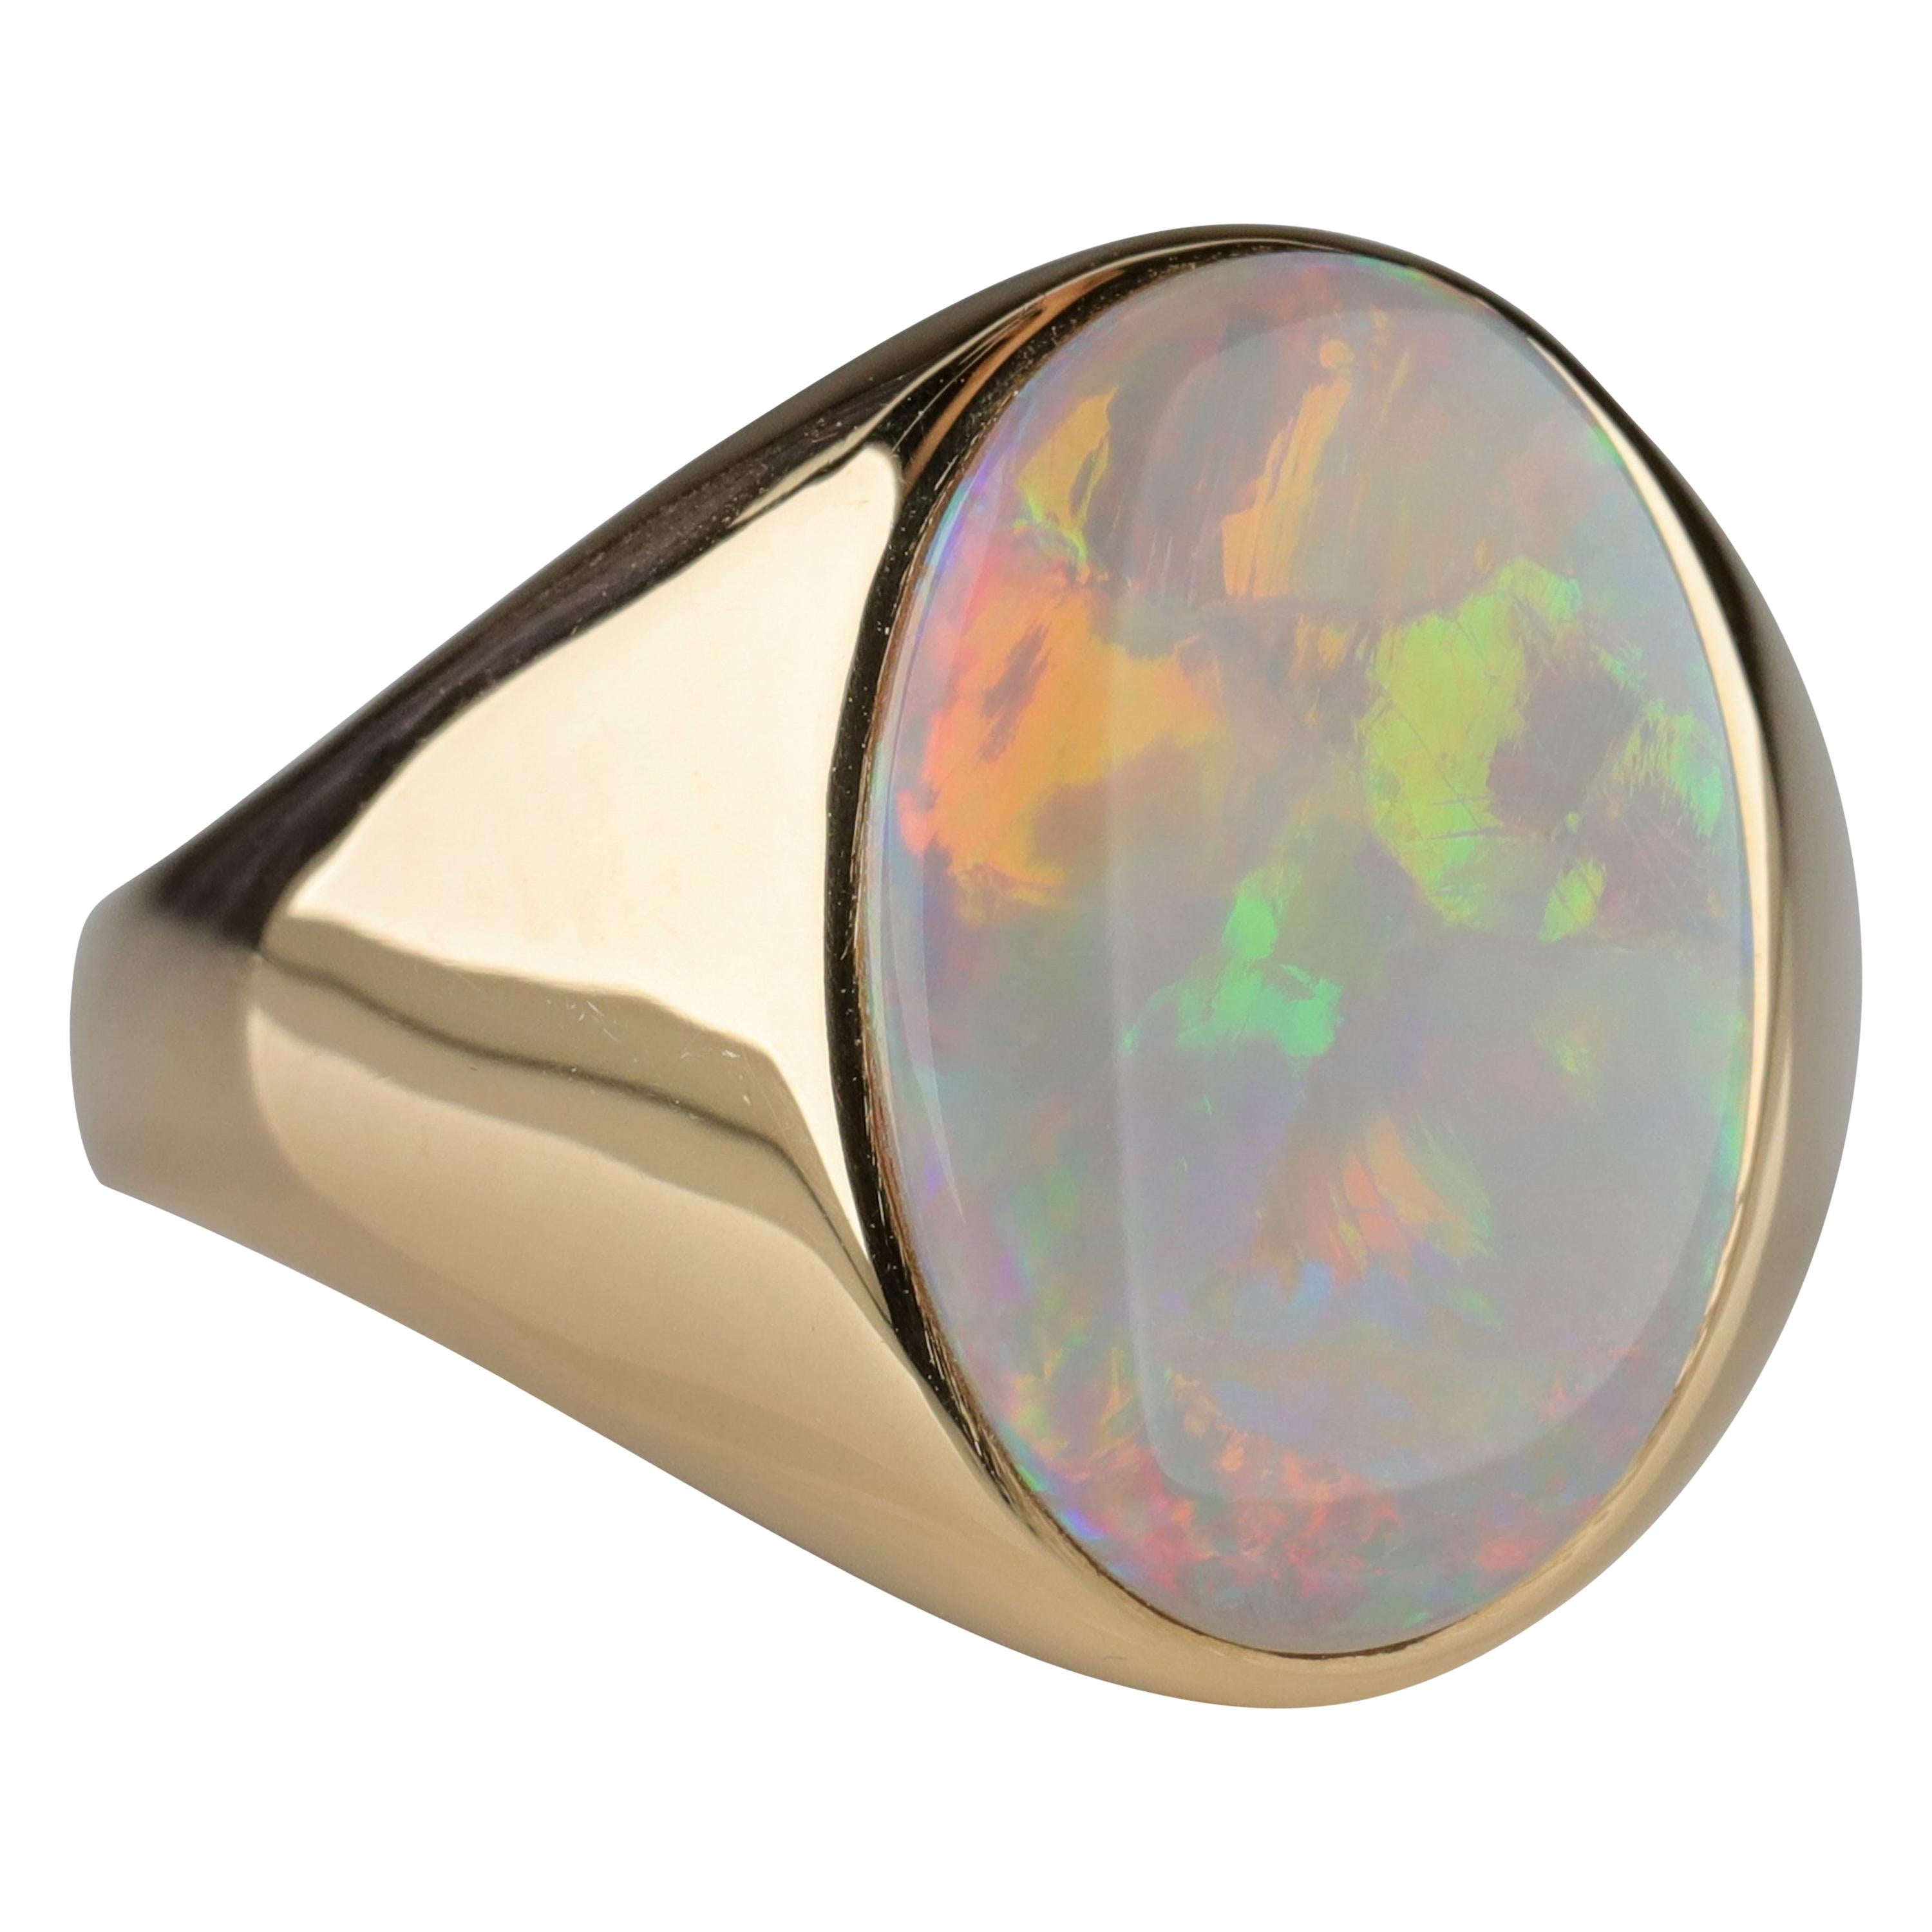 Men's Australian White Opal Ring with Full Spectrum Broad Flash